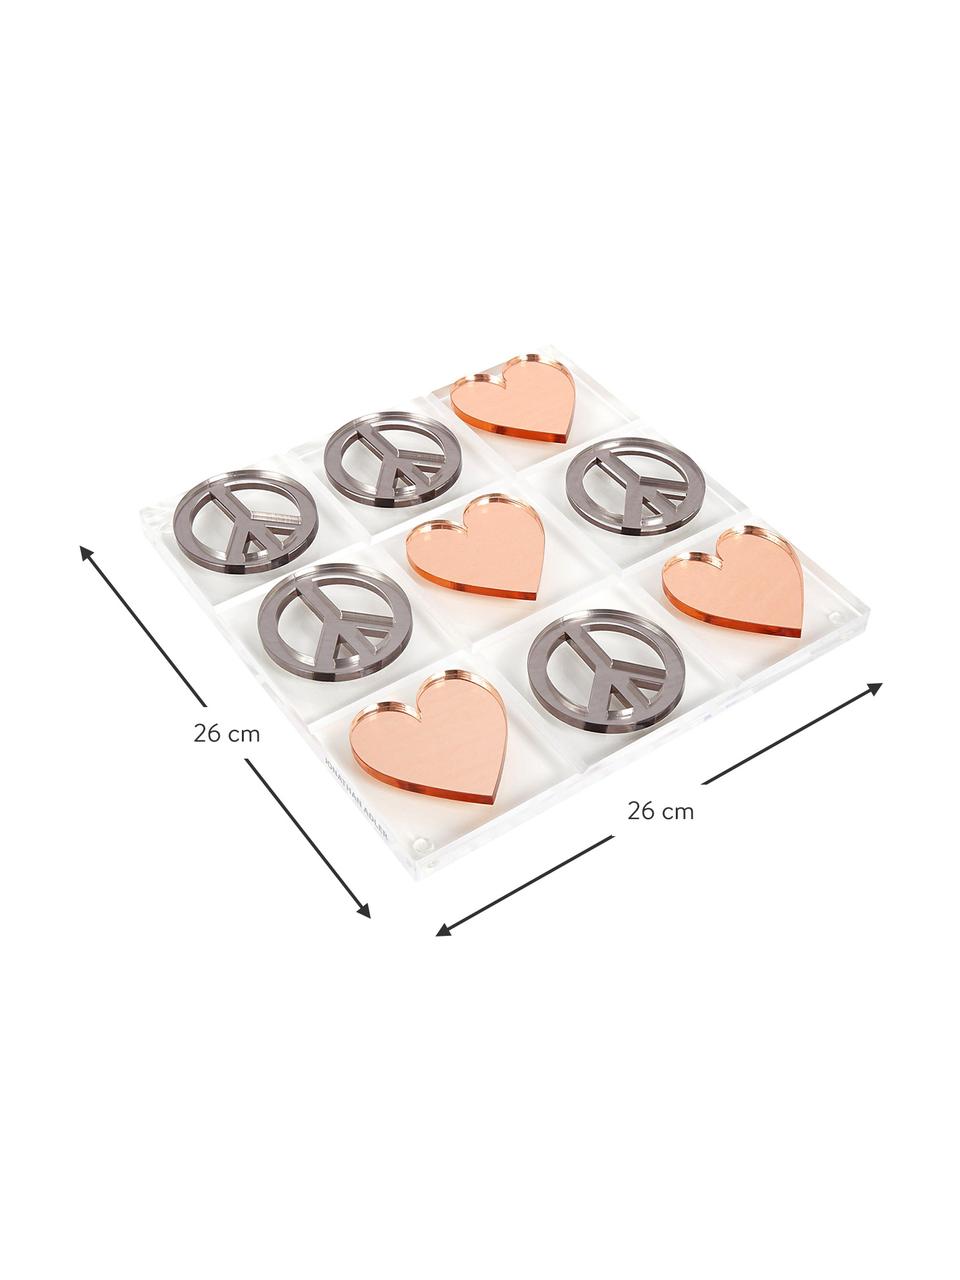 Designer-Brettspiel Love & Peace Tic Tac Toe, 100% Acrylglas, Spielsteine: Silberfarben und Kupferfarben<br>Spielbrett: Transparent, 26 x 26 cm